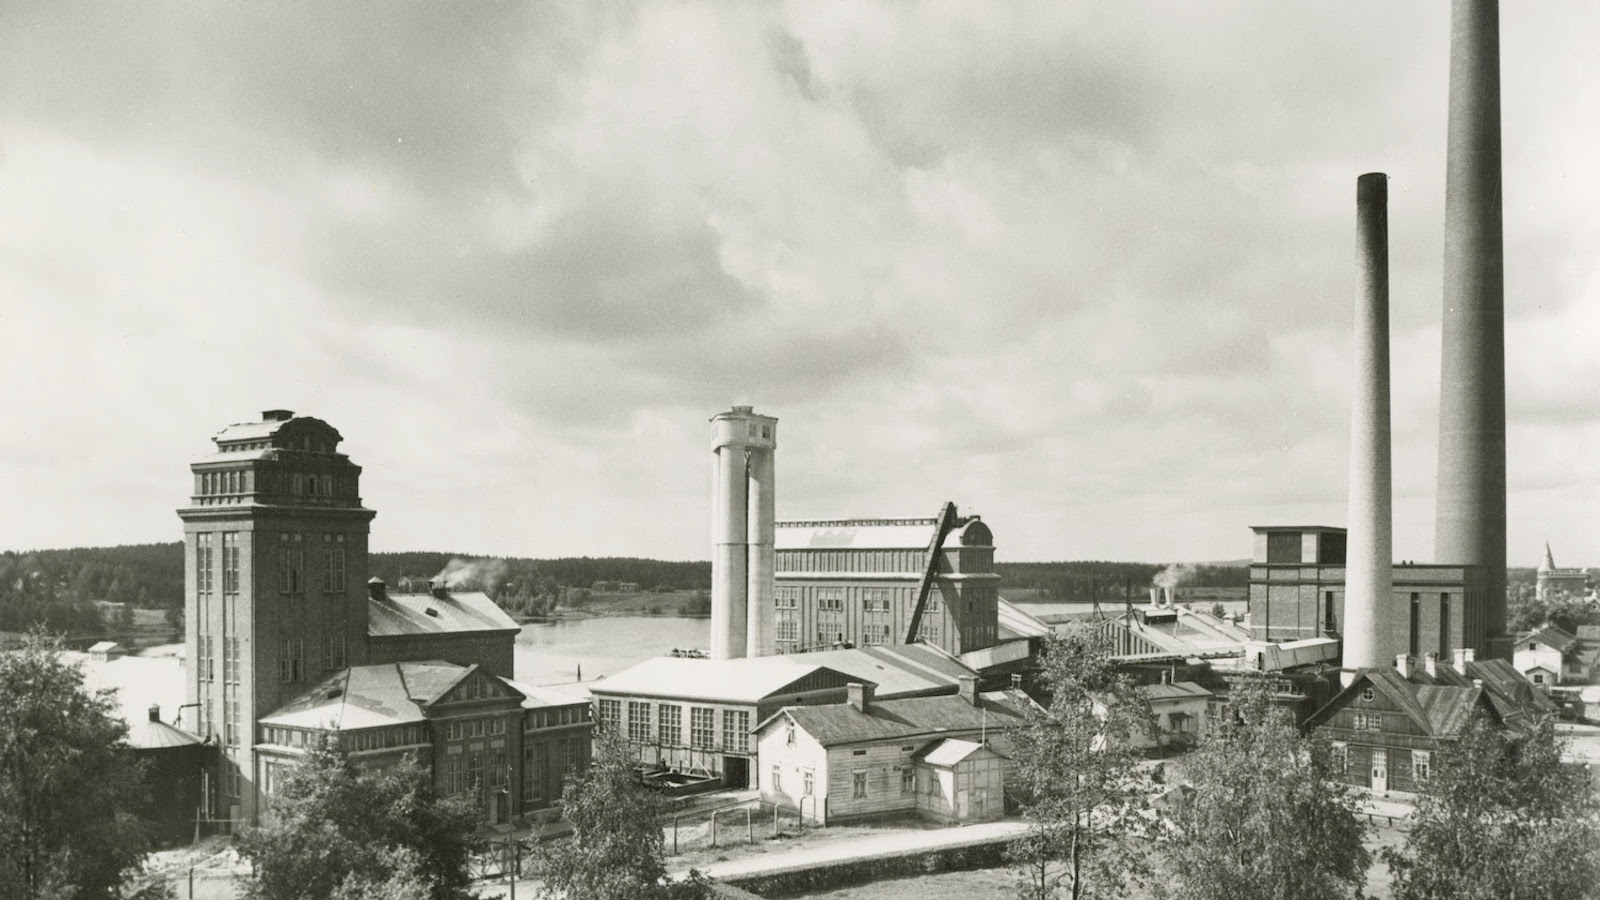 Kuvassa on Serlachiuksen tehdasmiljöö Mäntässä ja kuvassa näkyvät mm. tehtaan piiput. Kuva on musta-valkoinen.